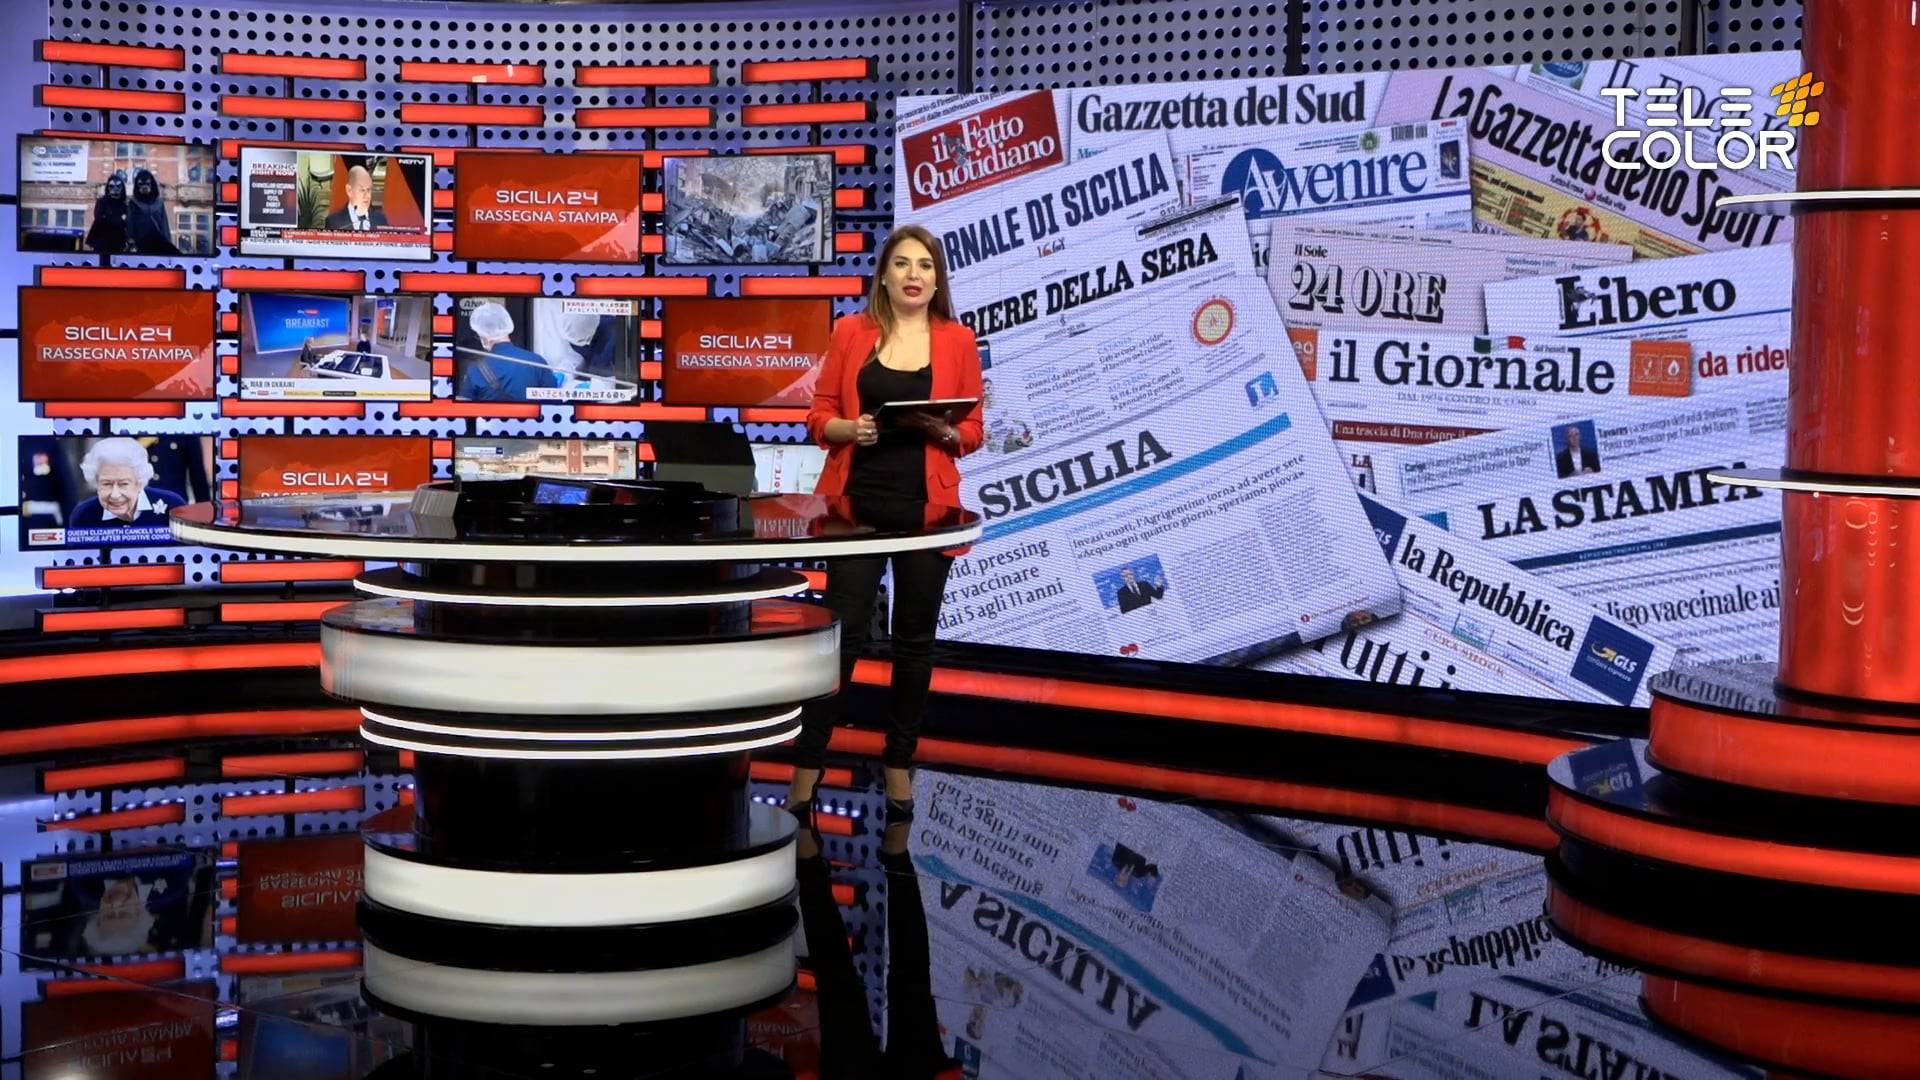 sicilia24-rassegna-stampa-25-febbraio-2023-vimeo-thumbnail.jpg